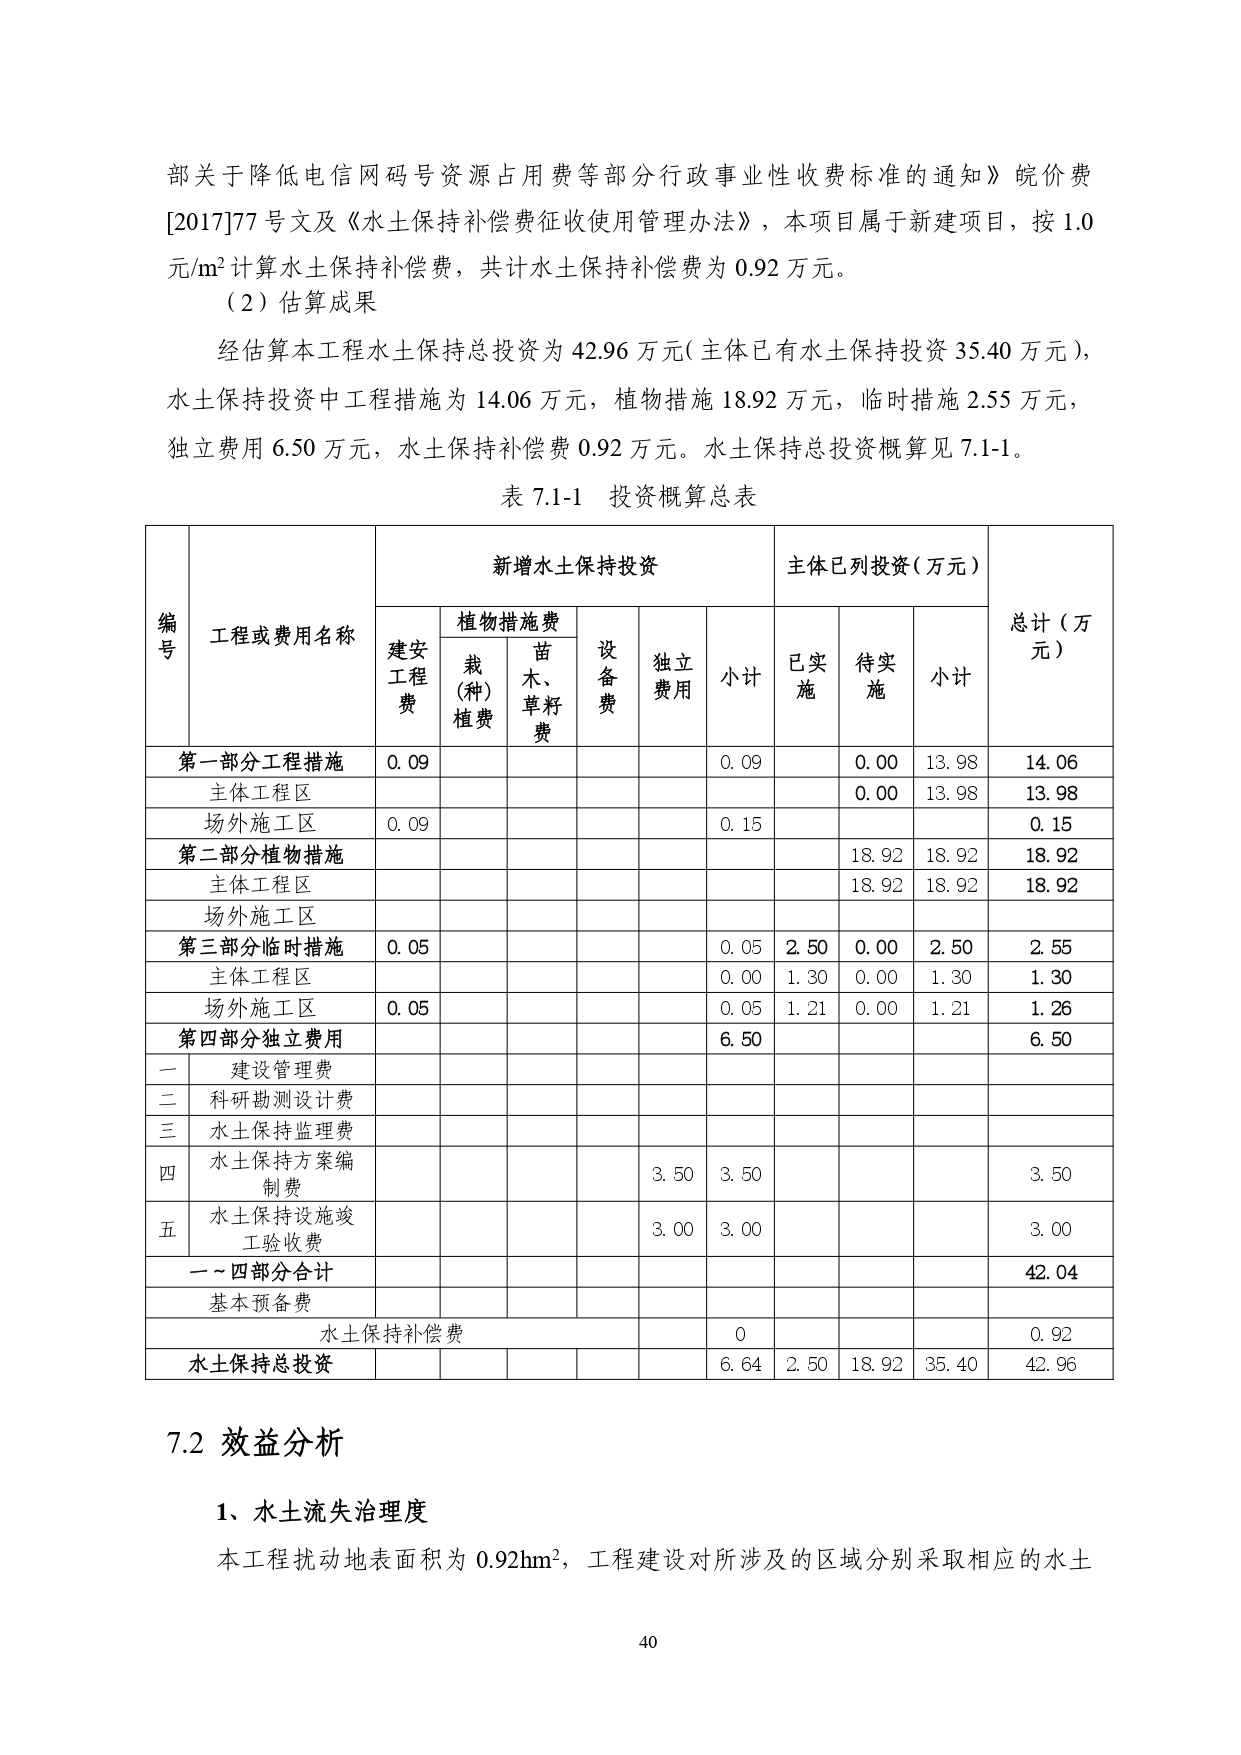 01-中果广场大厦项目水土保持报告表-打印_page-0051.jpg